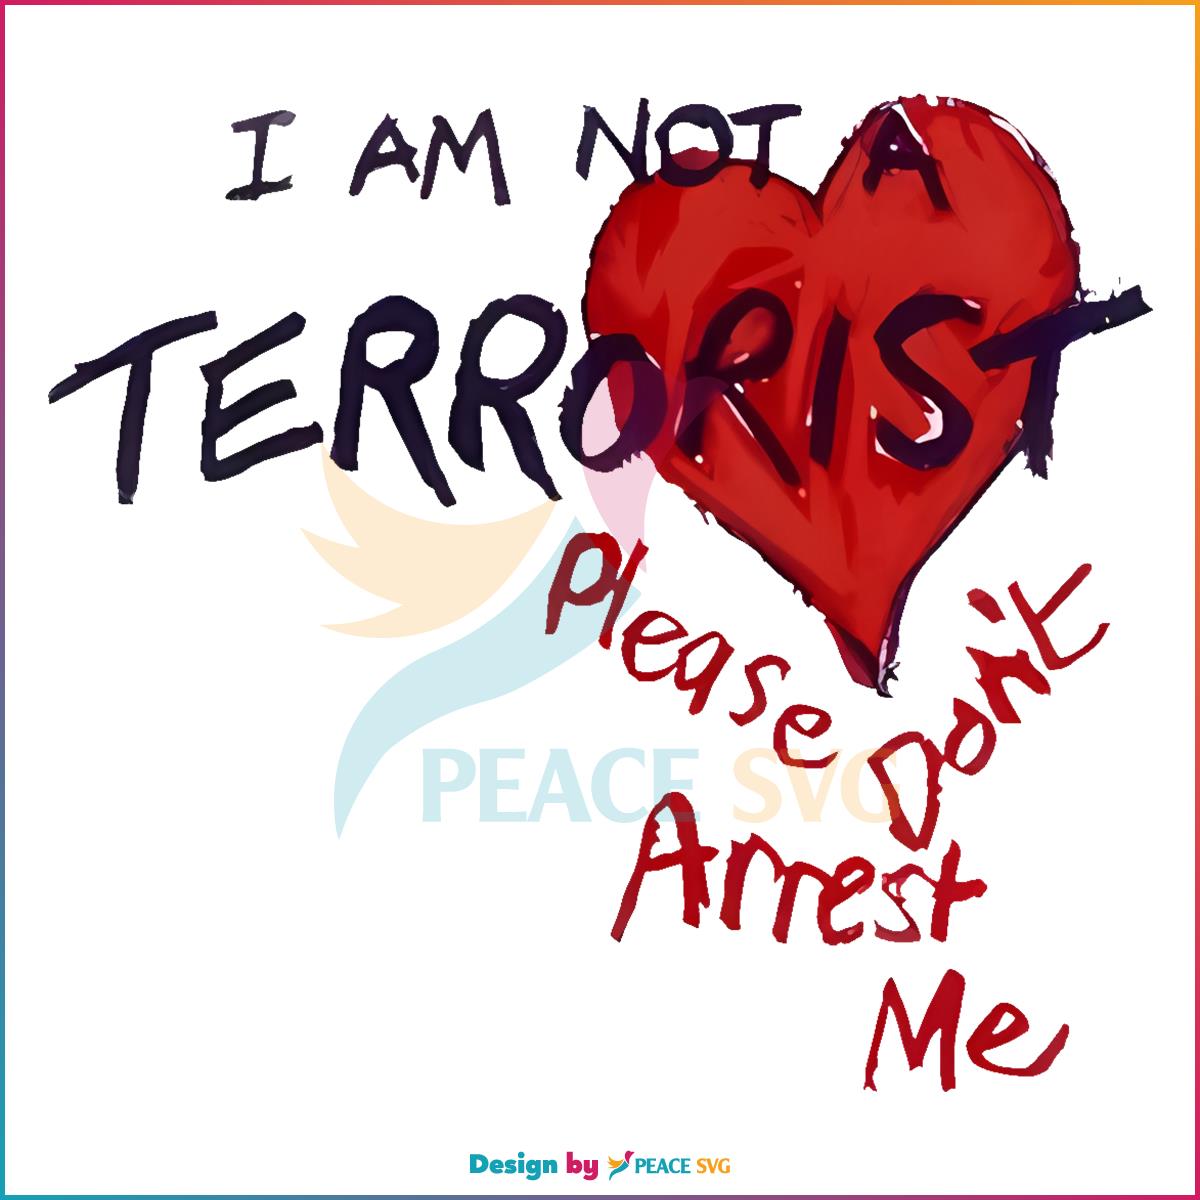 I'm Not A Terrorist Please Dont Arrest Me Png